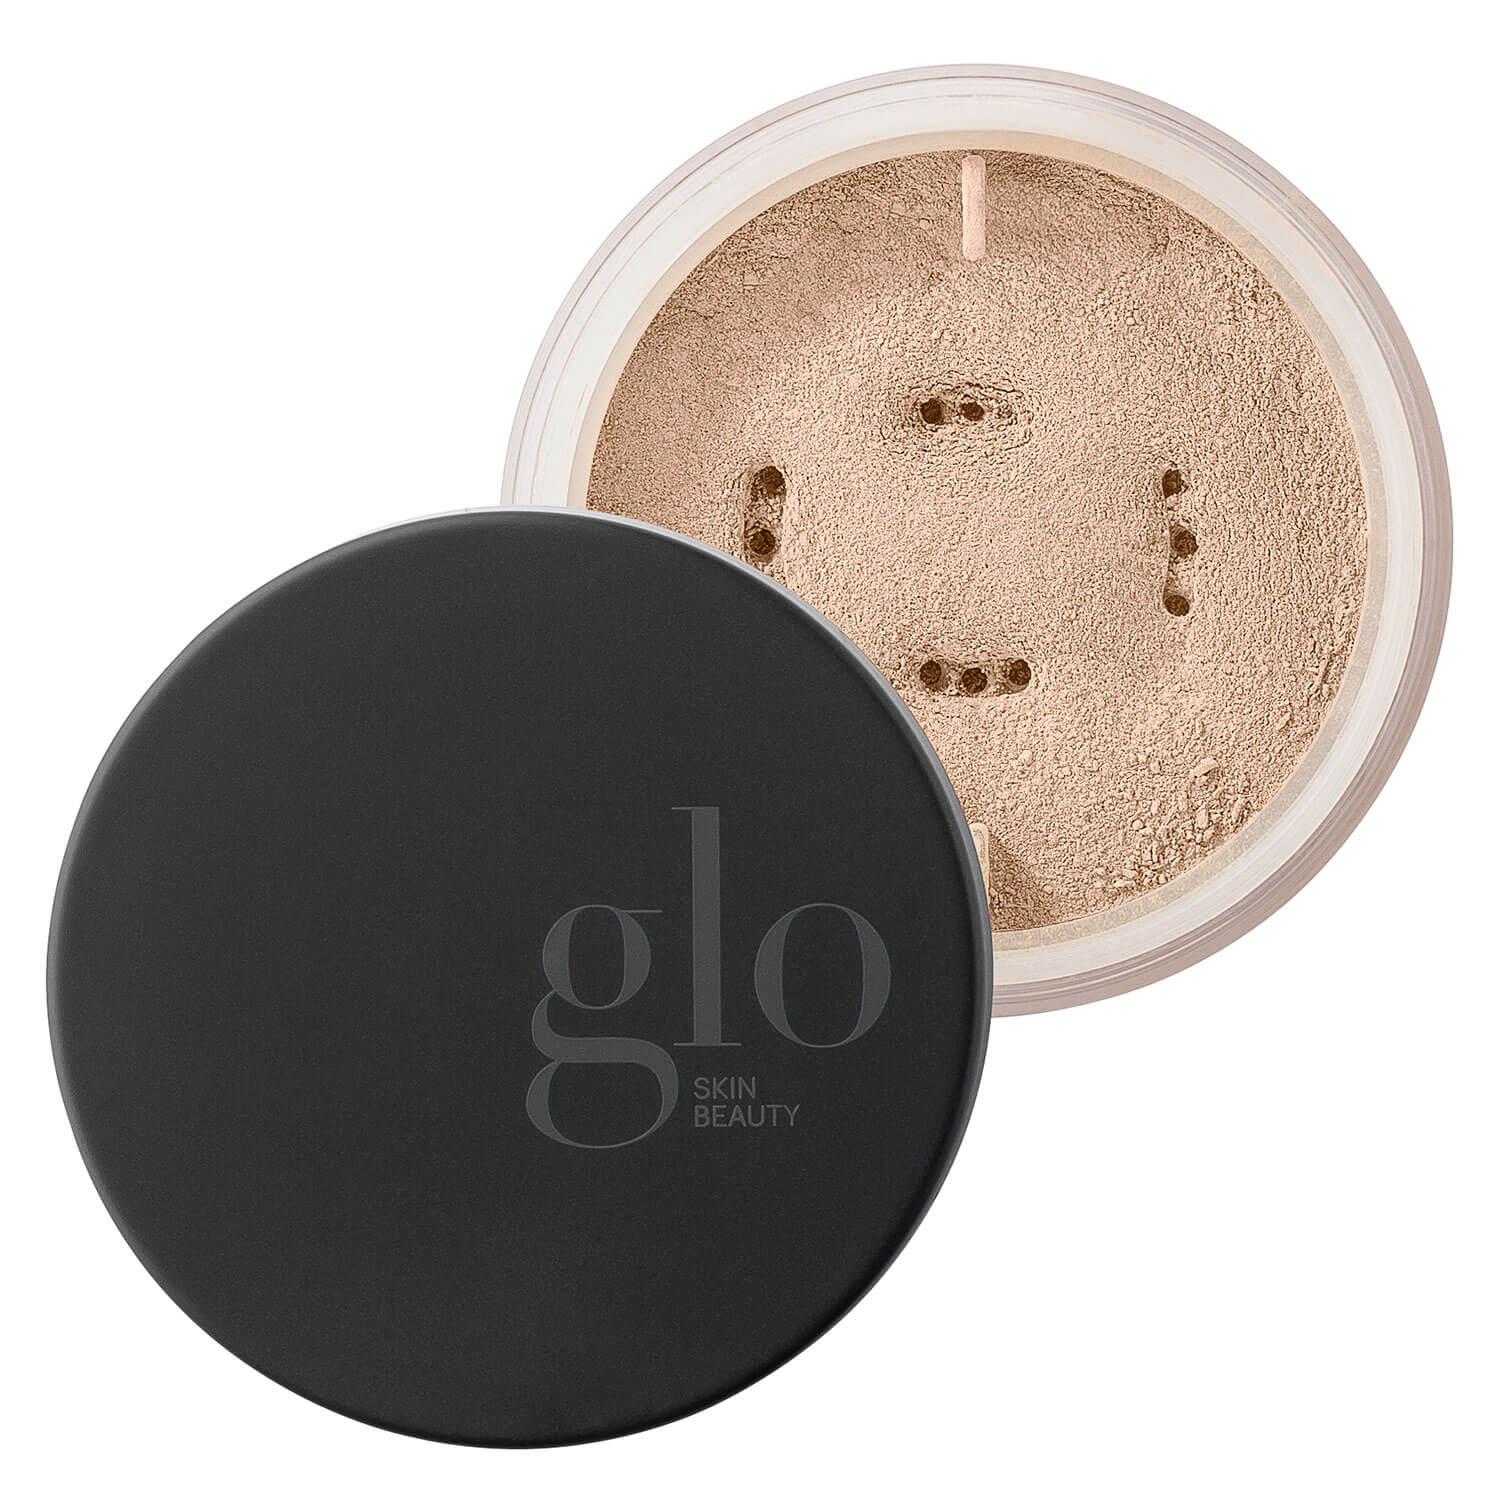 Glo Skin Beauty Powder - Loose Base Natural Fair